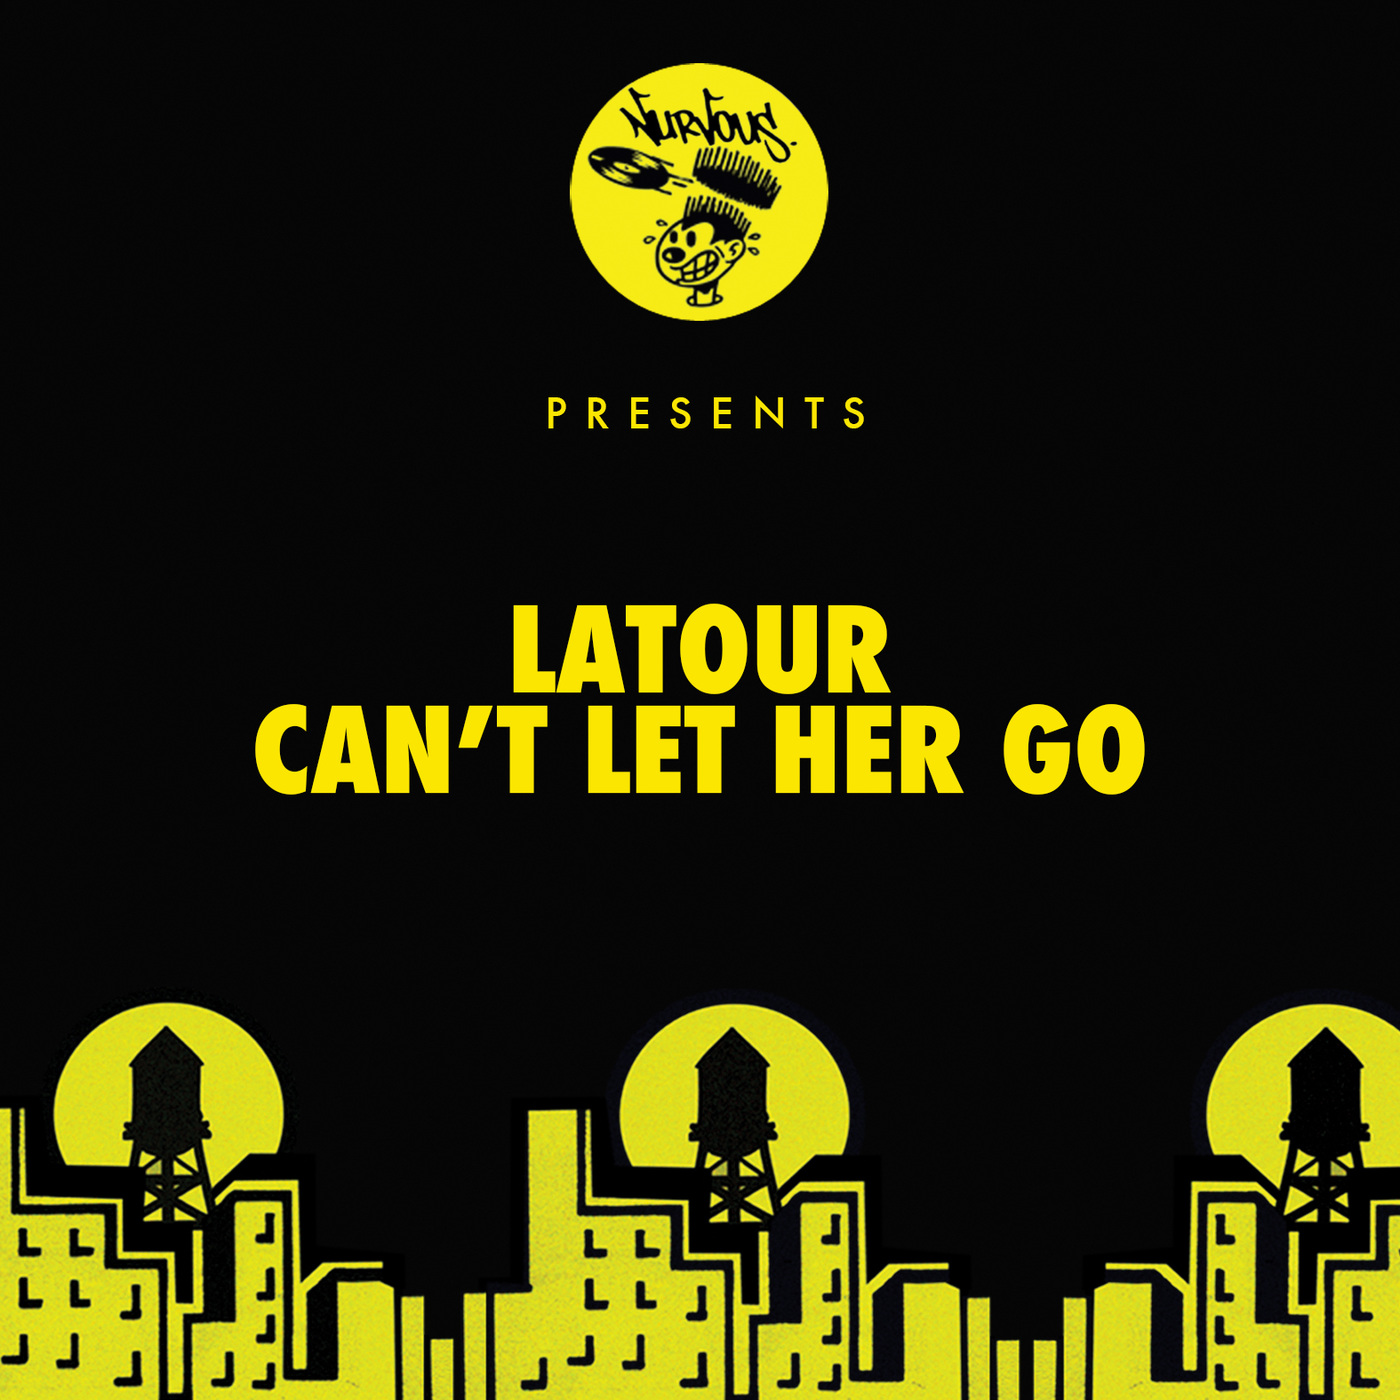 LaTour - Can't Let Her Go / Nurvous Records